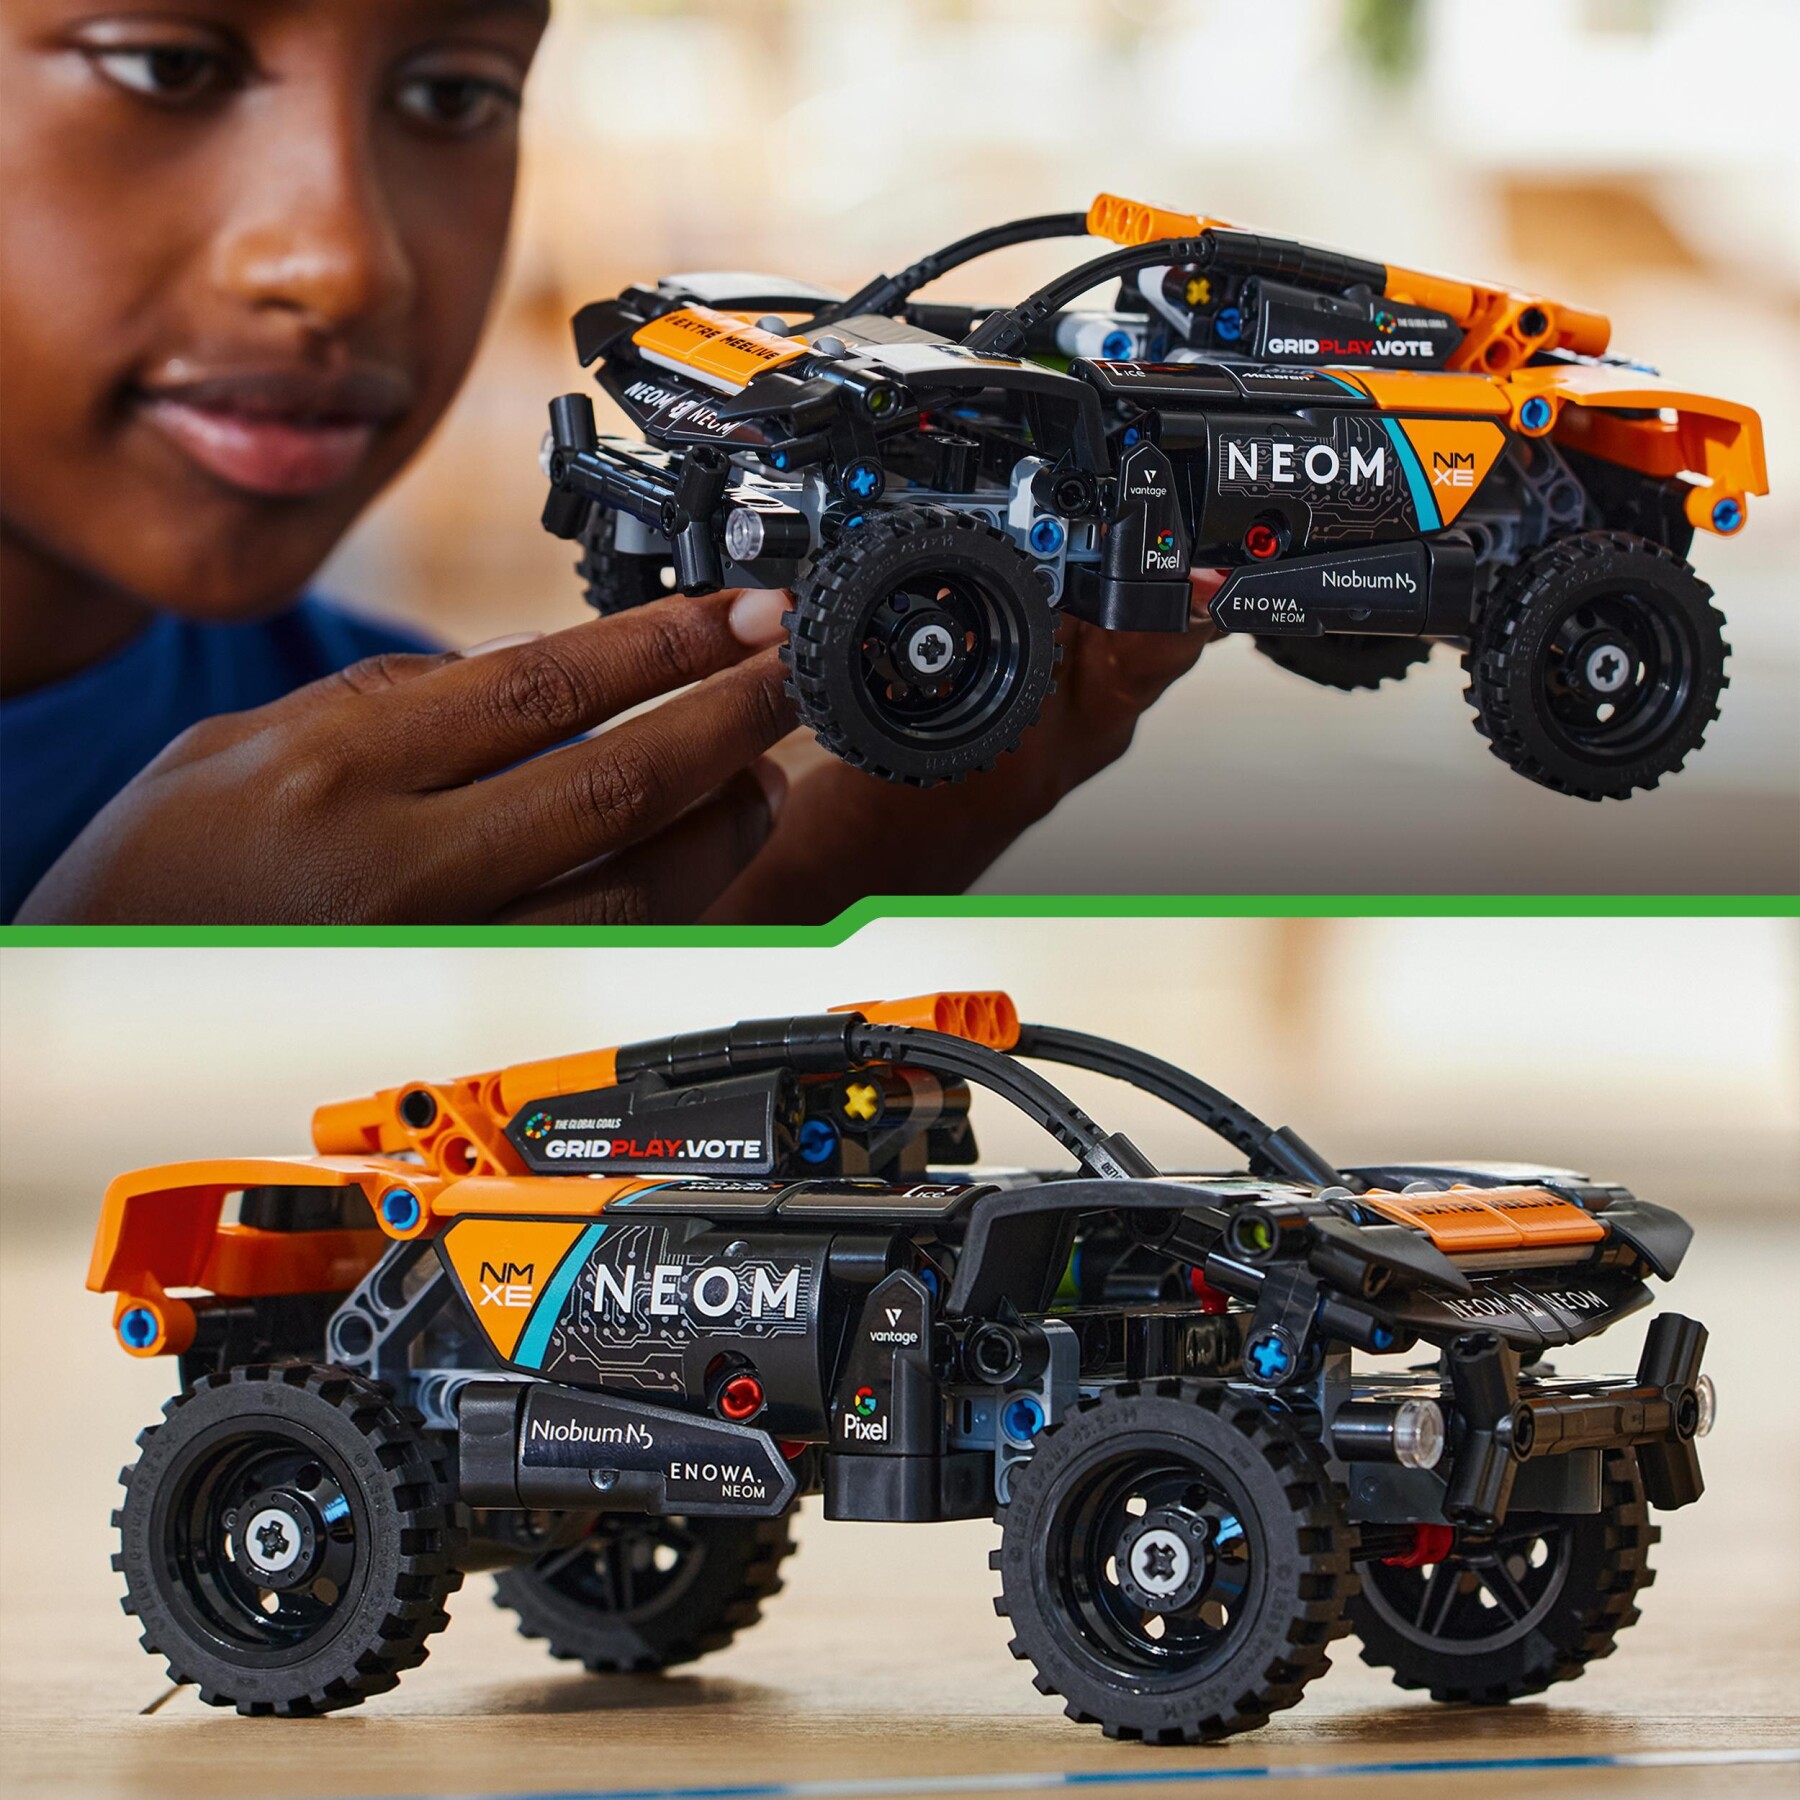 Lego technic 42166 neom mclaren extreme e race car, macchina giocattolo con funzione pull-back, giochi per bambini di 7+ anni - LEGO TECHNIC